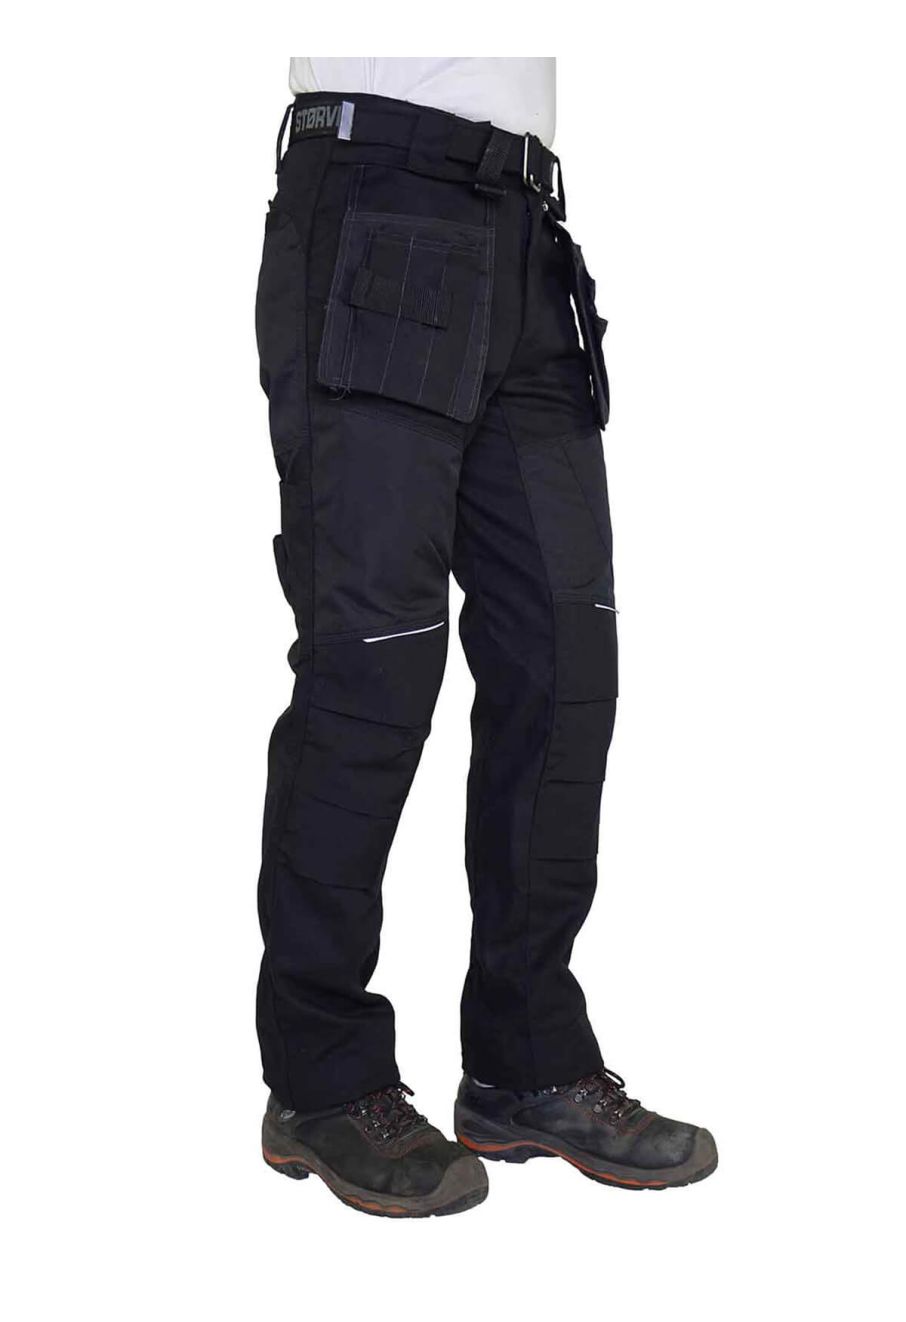 JCB Mens Cargo Combat Trousers Pant Work Wear Regular Waist Size 28 in - 44  in | eBay